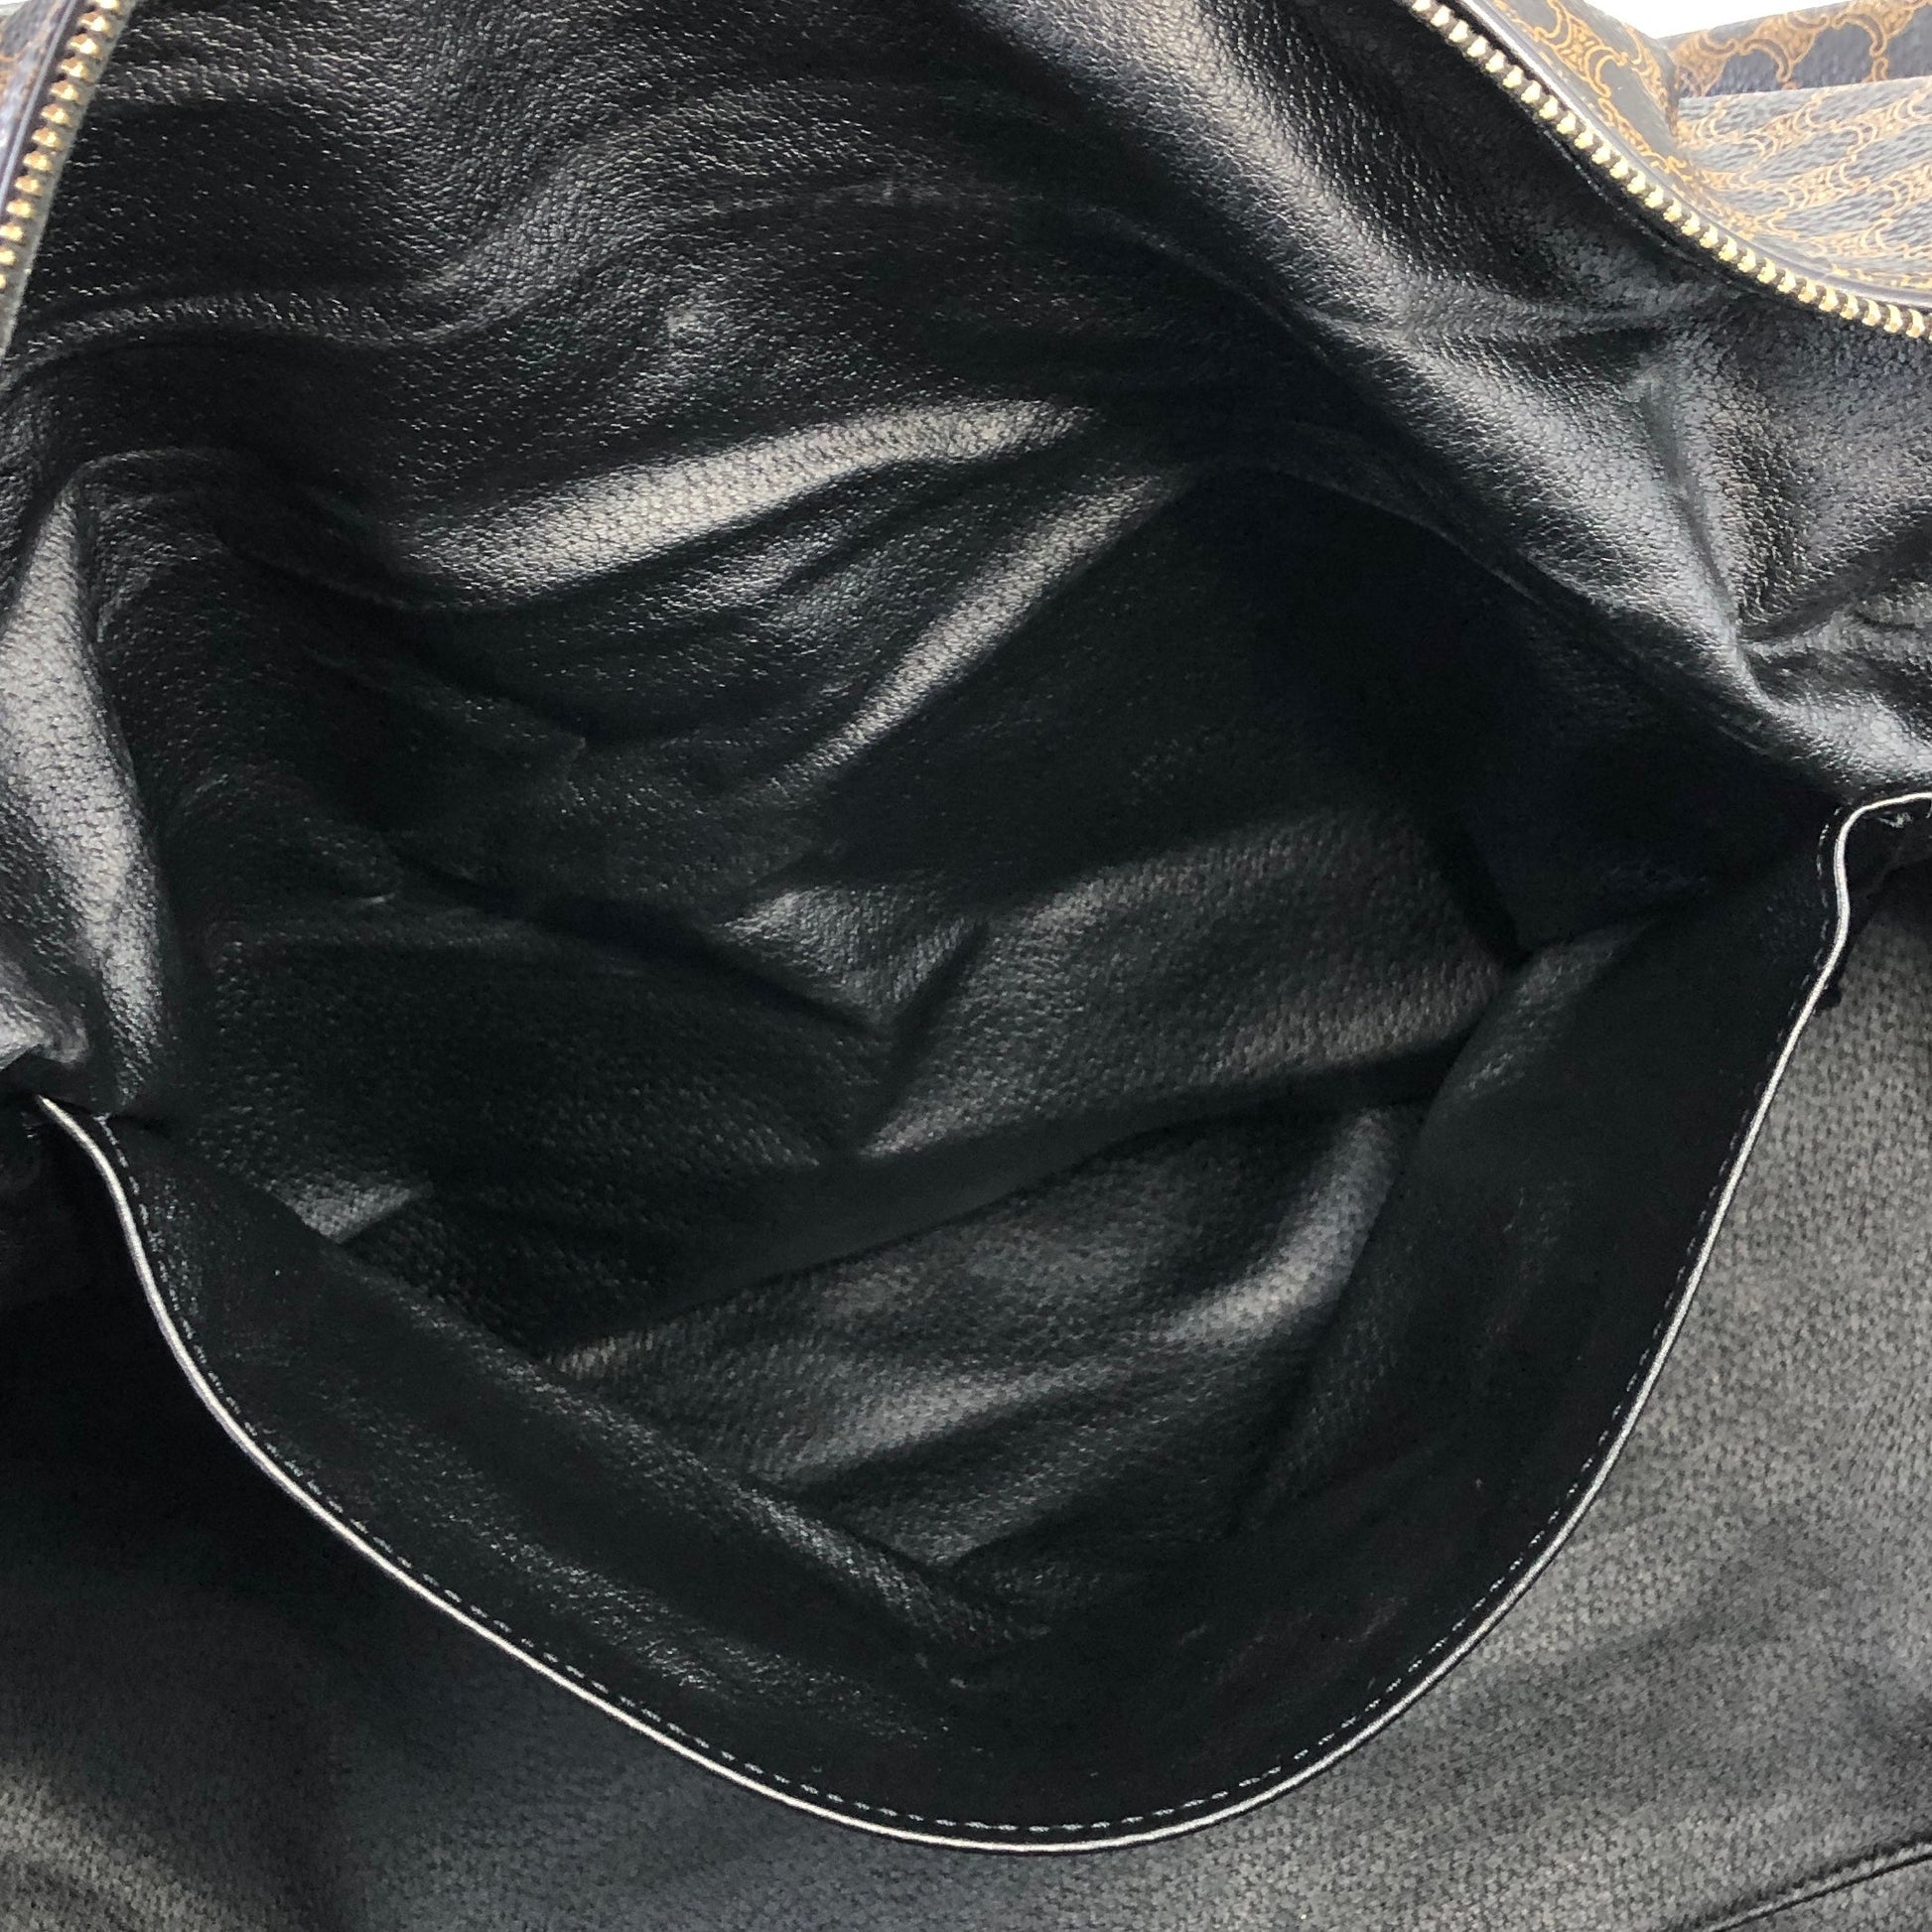 CELINE Handbag Boston bag Plain Leather White women's USED FROM JAPAN